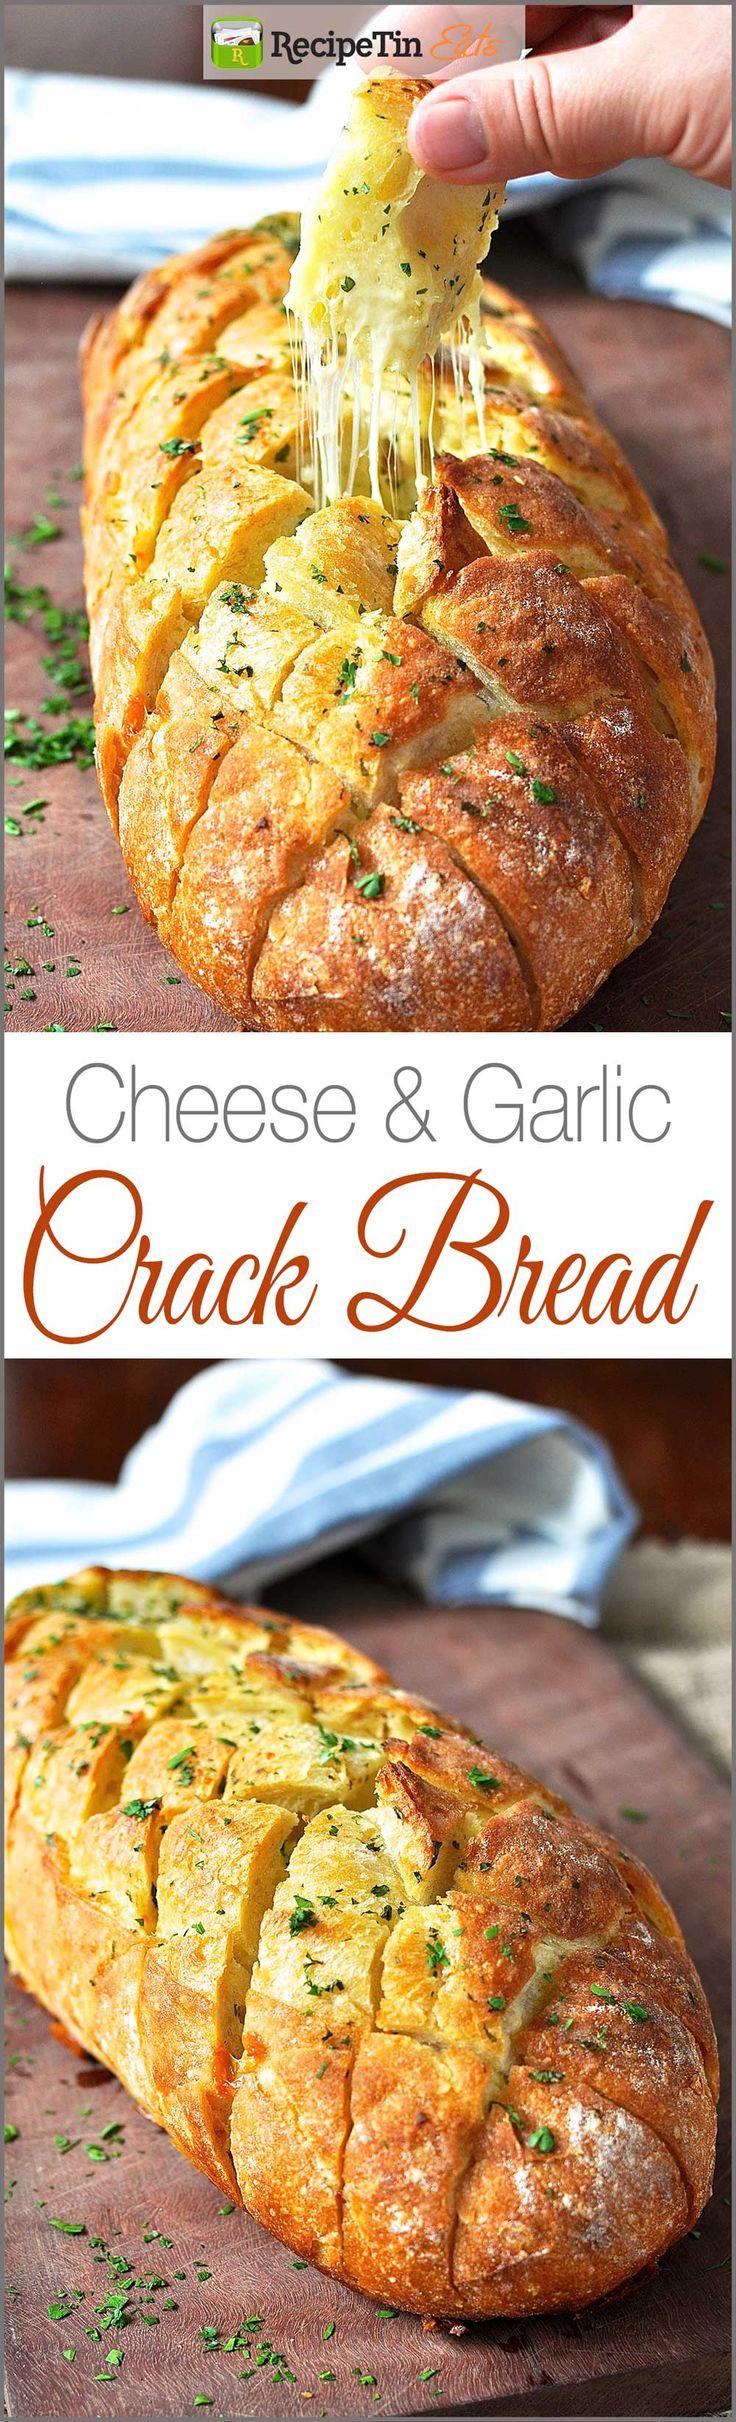 Hochzeit - Cheese And Garlic Crack Bread (Pull Apart Bread)